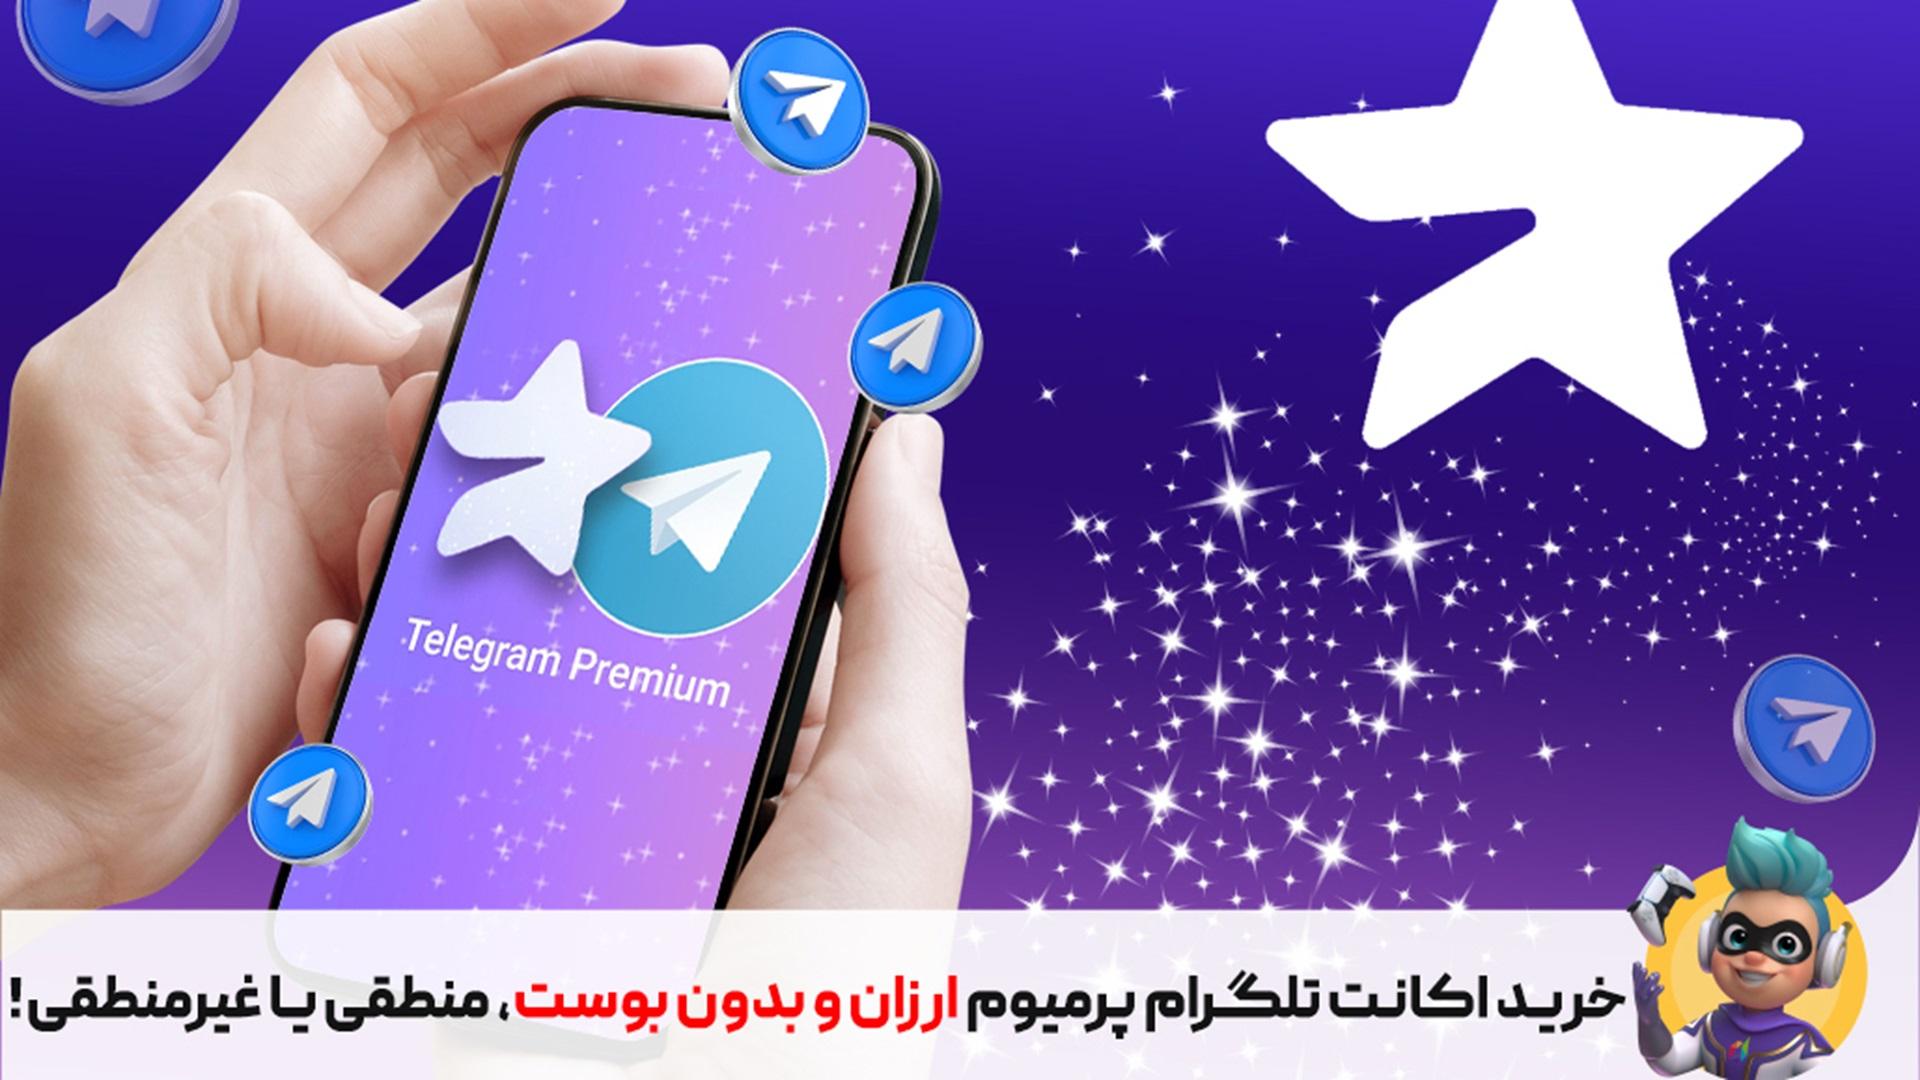 بررسی علت فروش اکانت تلگرام پرمیوم ازران با دیکاردو